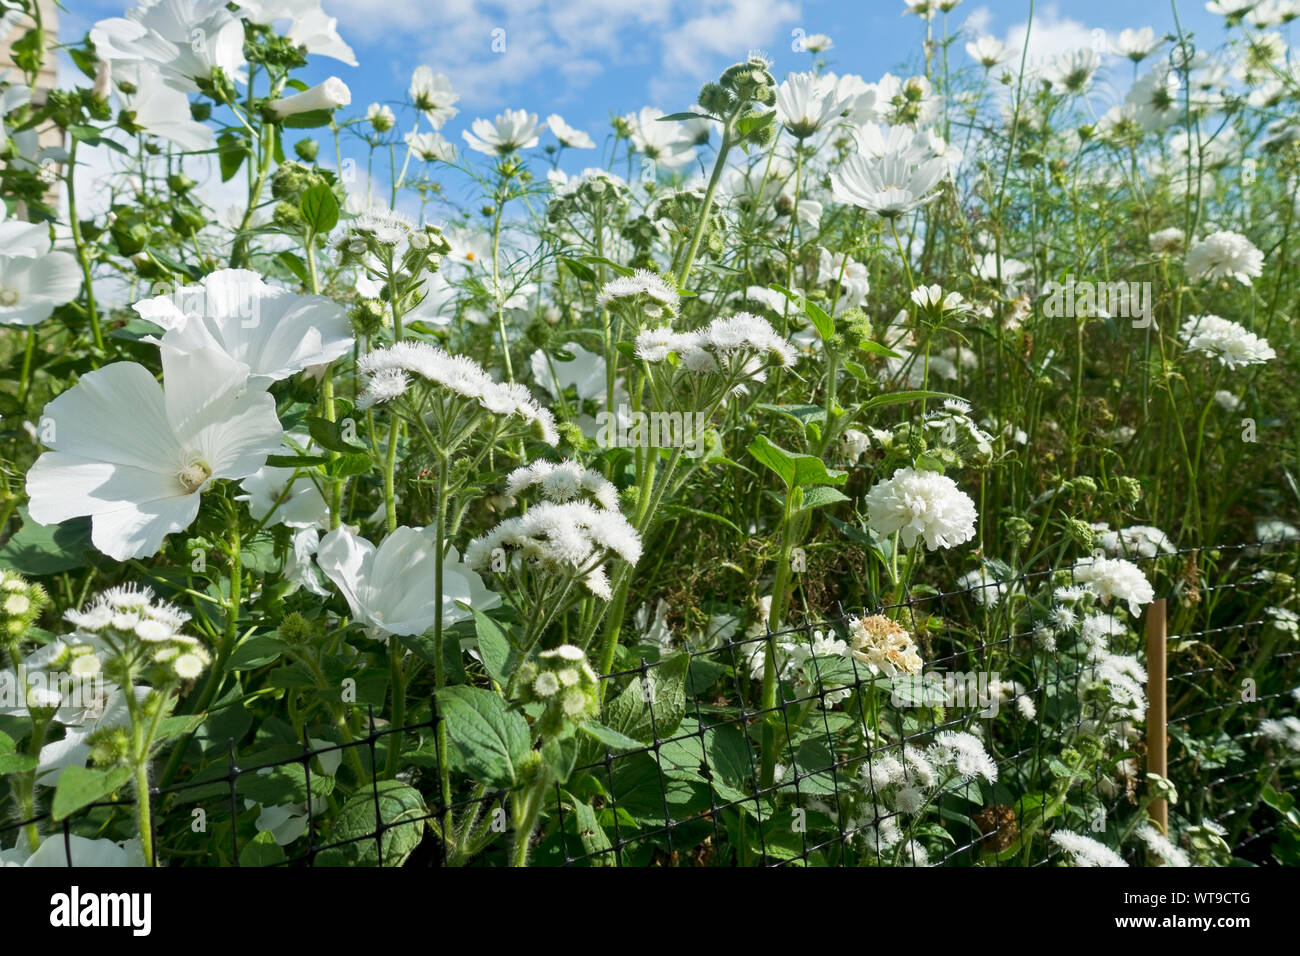 Gros plan de fleurs blanches ageratum lavatera et cosmos poussant dans un jardin de chalet frontière en été Angleterre Royaume-Uni Grande-Bretagne Banque D'Images